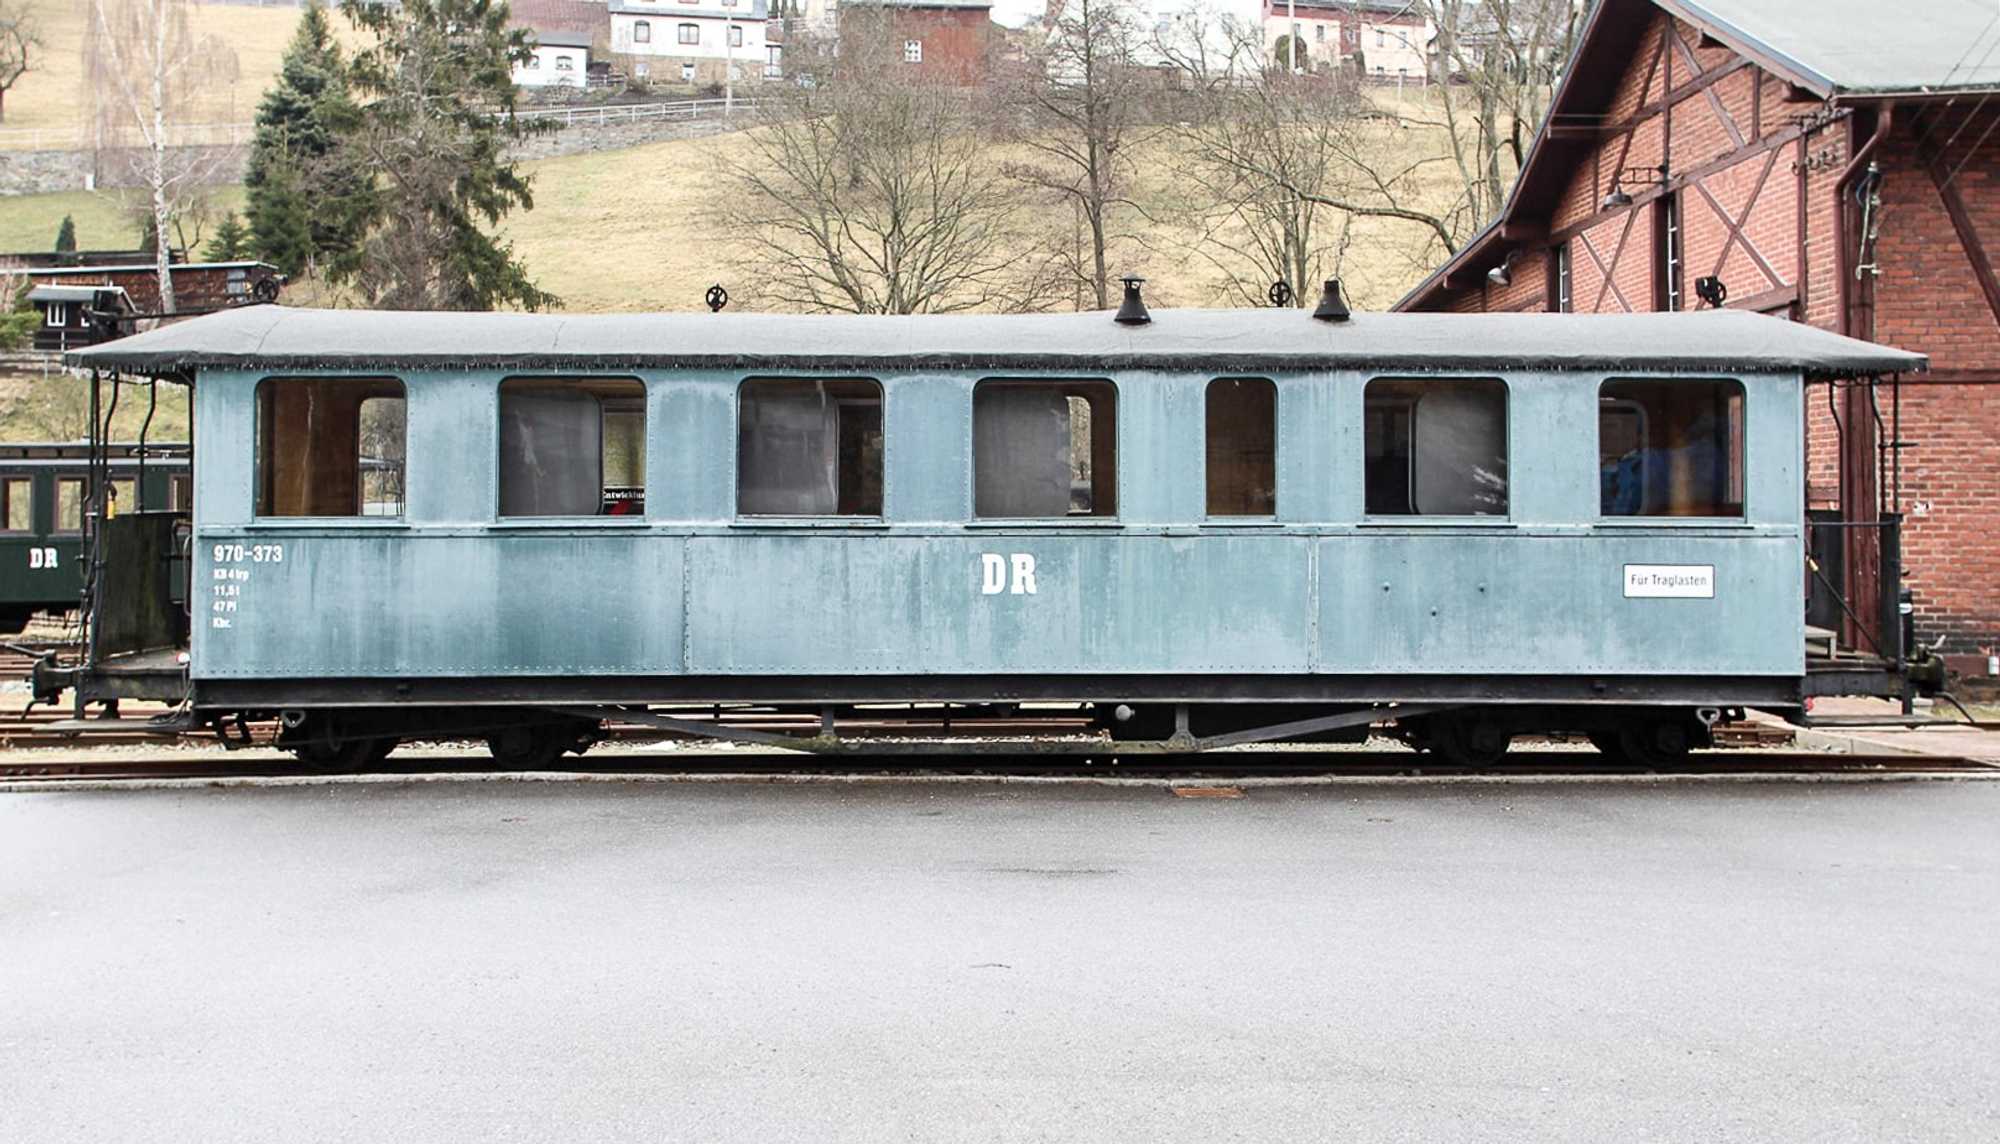 Im Rittersgrüner Sitzwagen 970-373 wird eine Sonderausstellung eingerichtet.